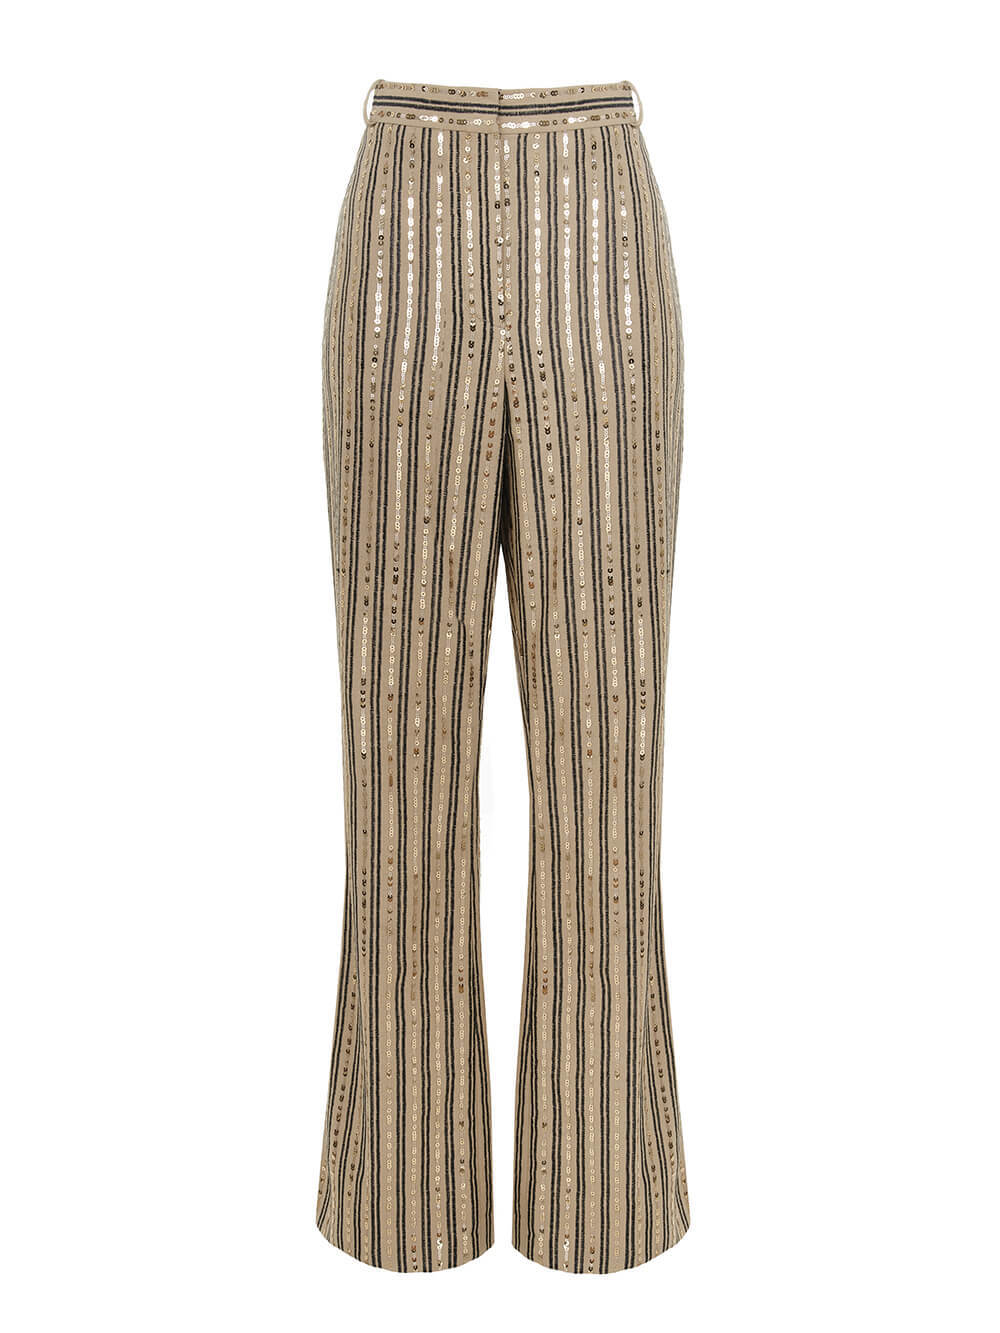 Женские брюки темно-бежевого цвета из льна и вискозы